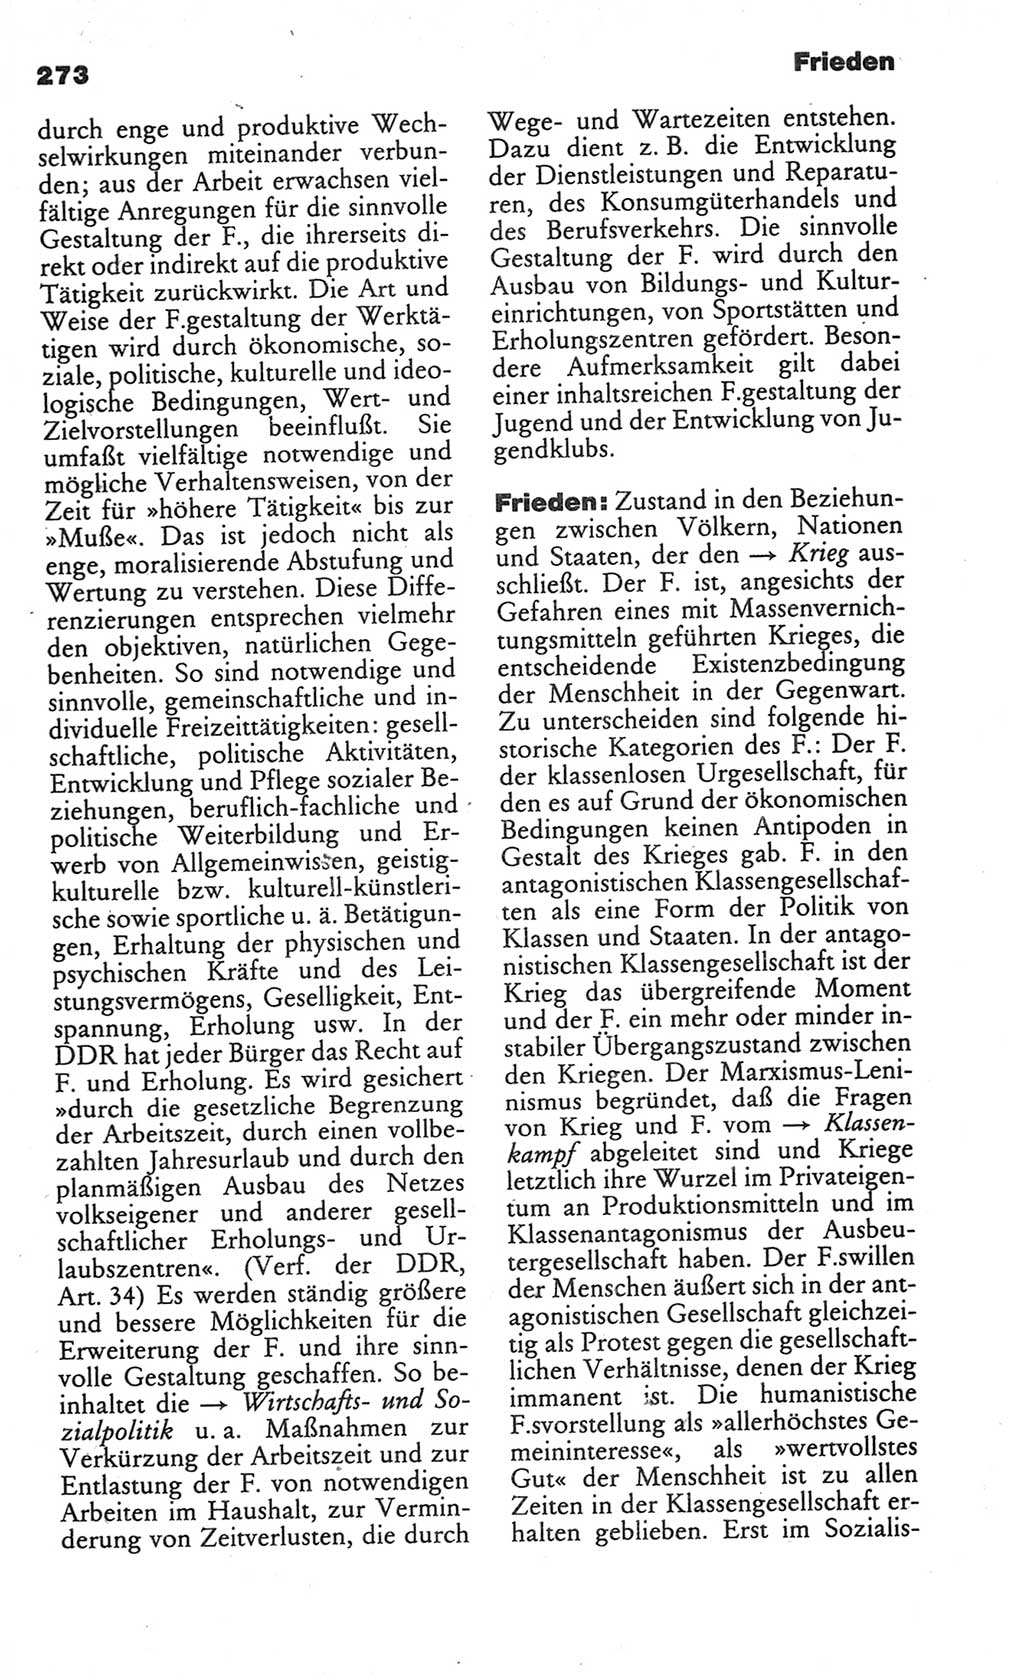 Kleines politisches Wörterbuch [Deutsche Demokratische Republik (DDR)] 1986, Seite 273 (Kl. pol. Wb. DDR 1986, S. 273)